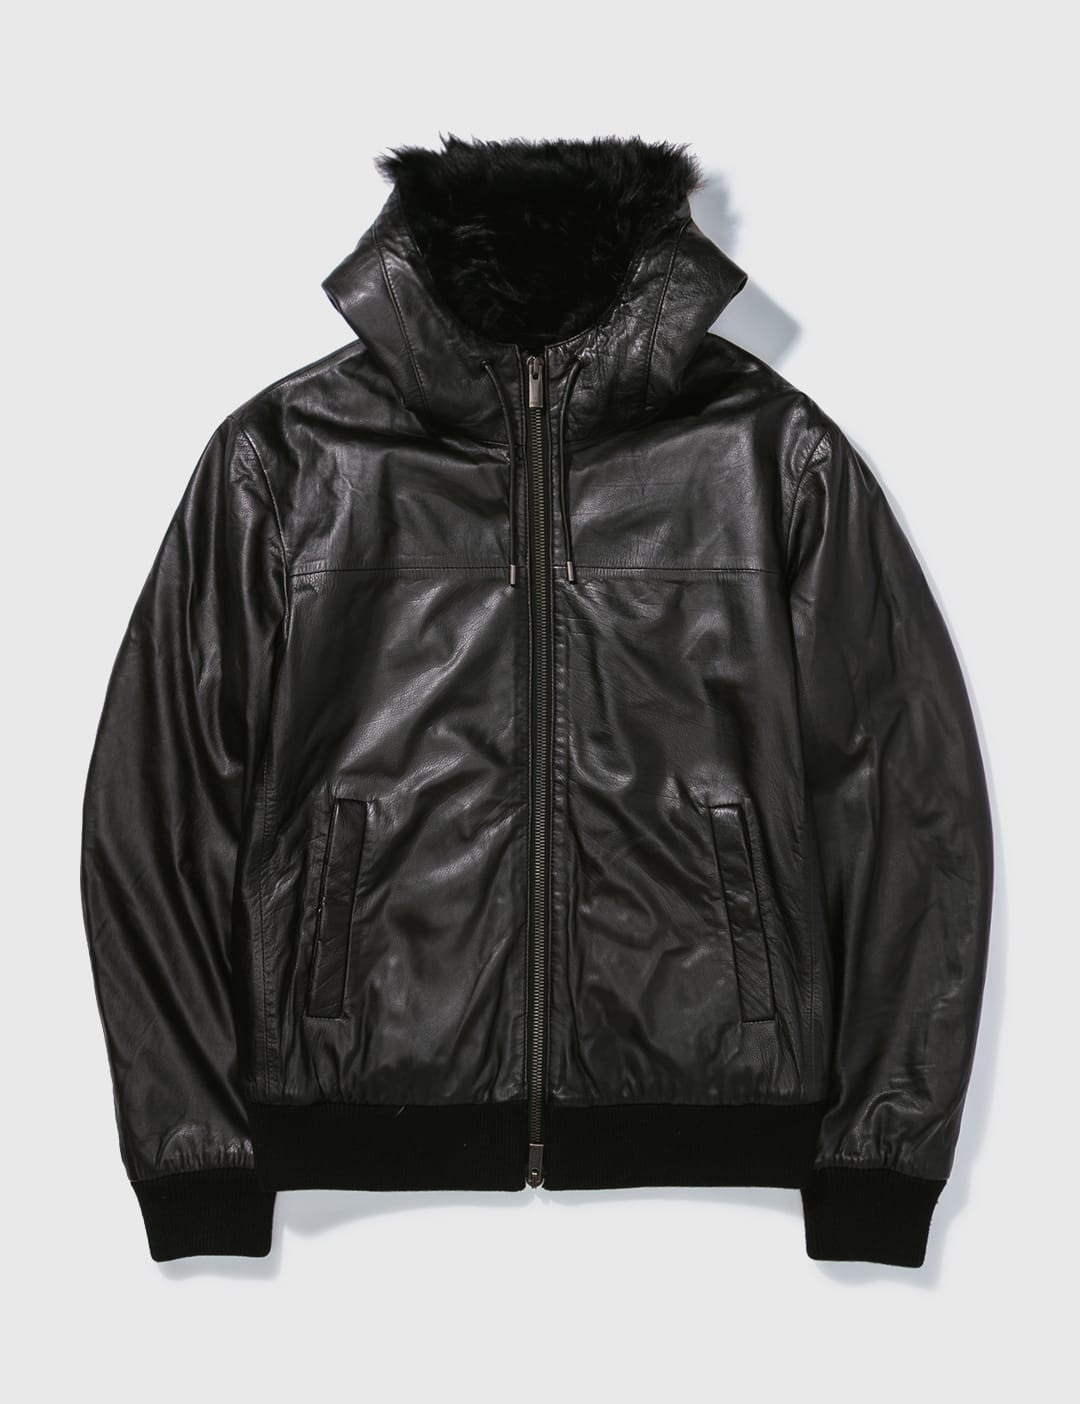 Fendi - Fendi Lamb Leather Jacket | HBX - Globally Curated Fashion